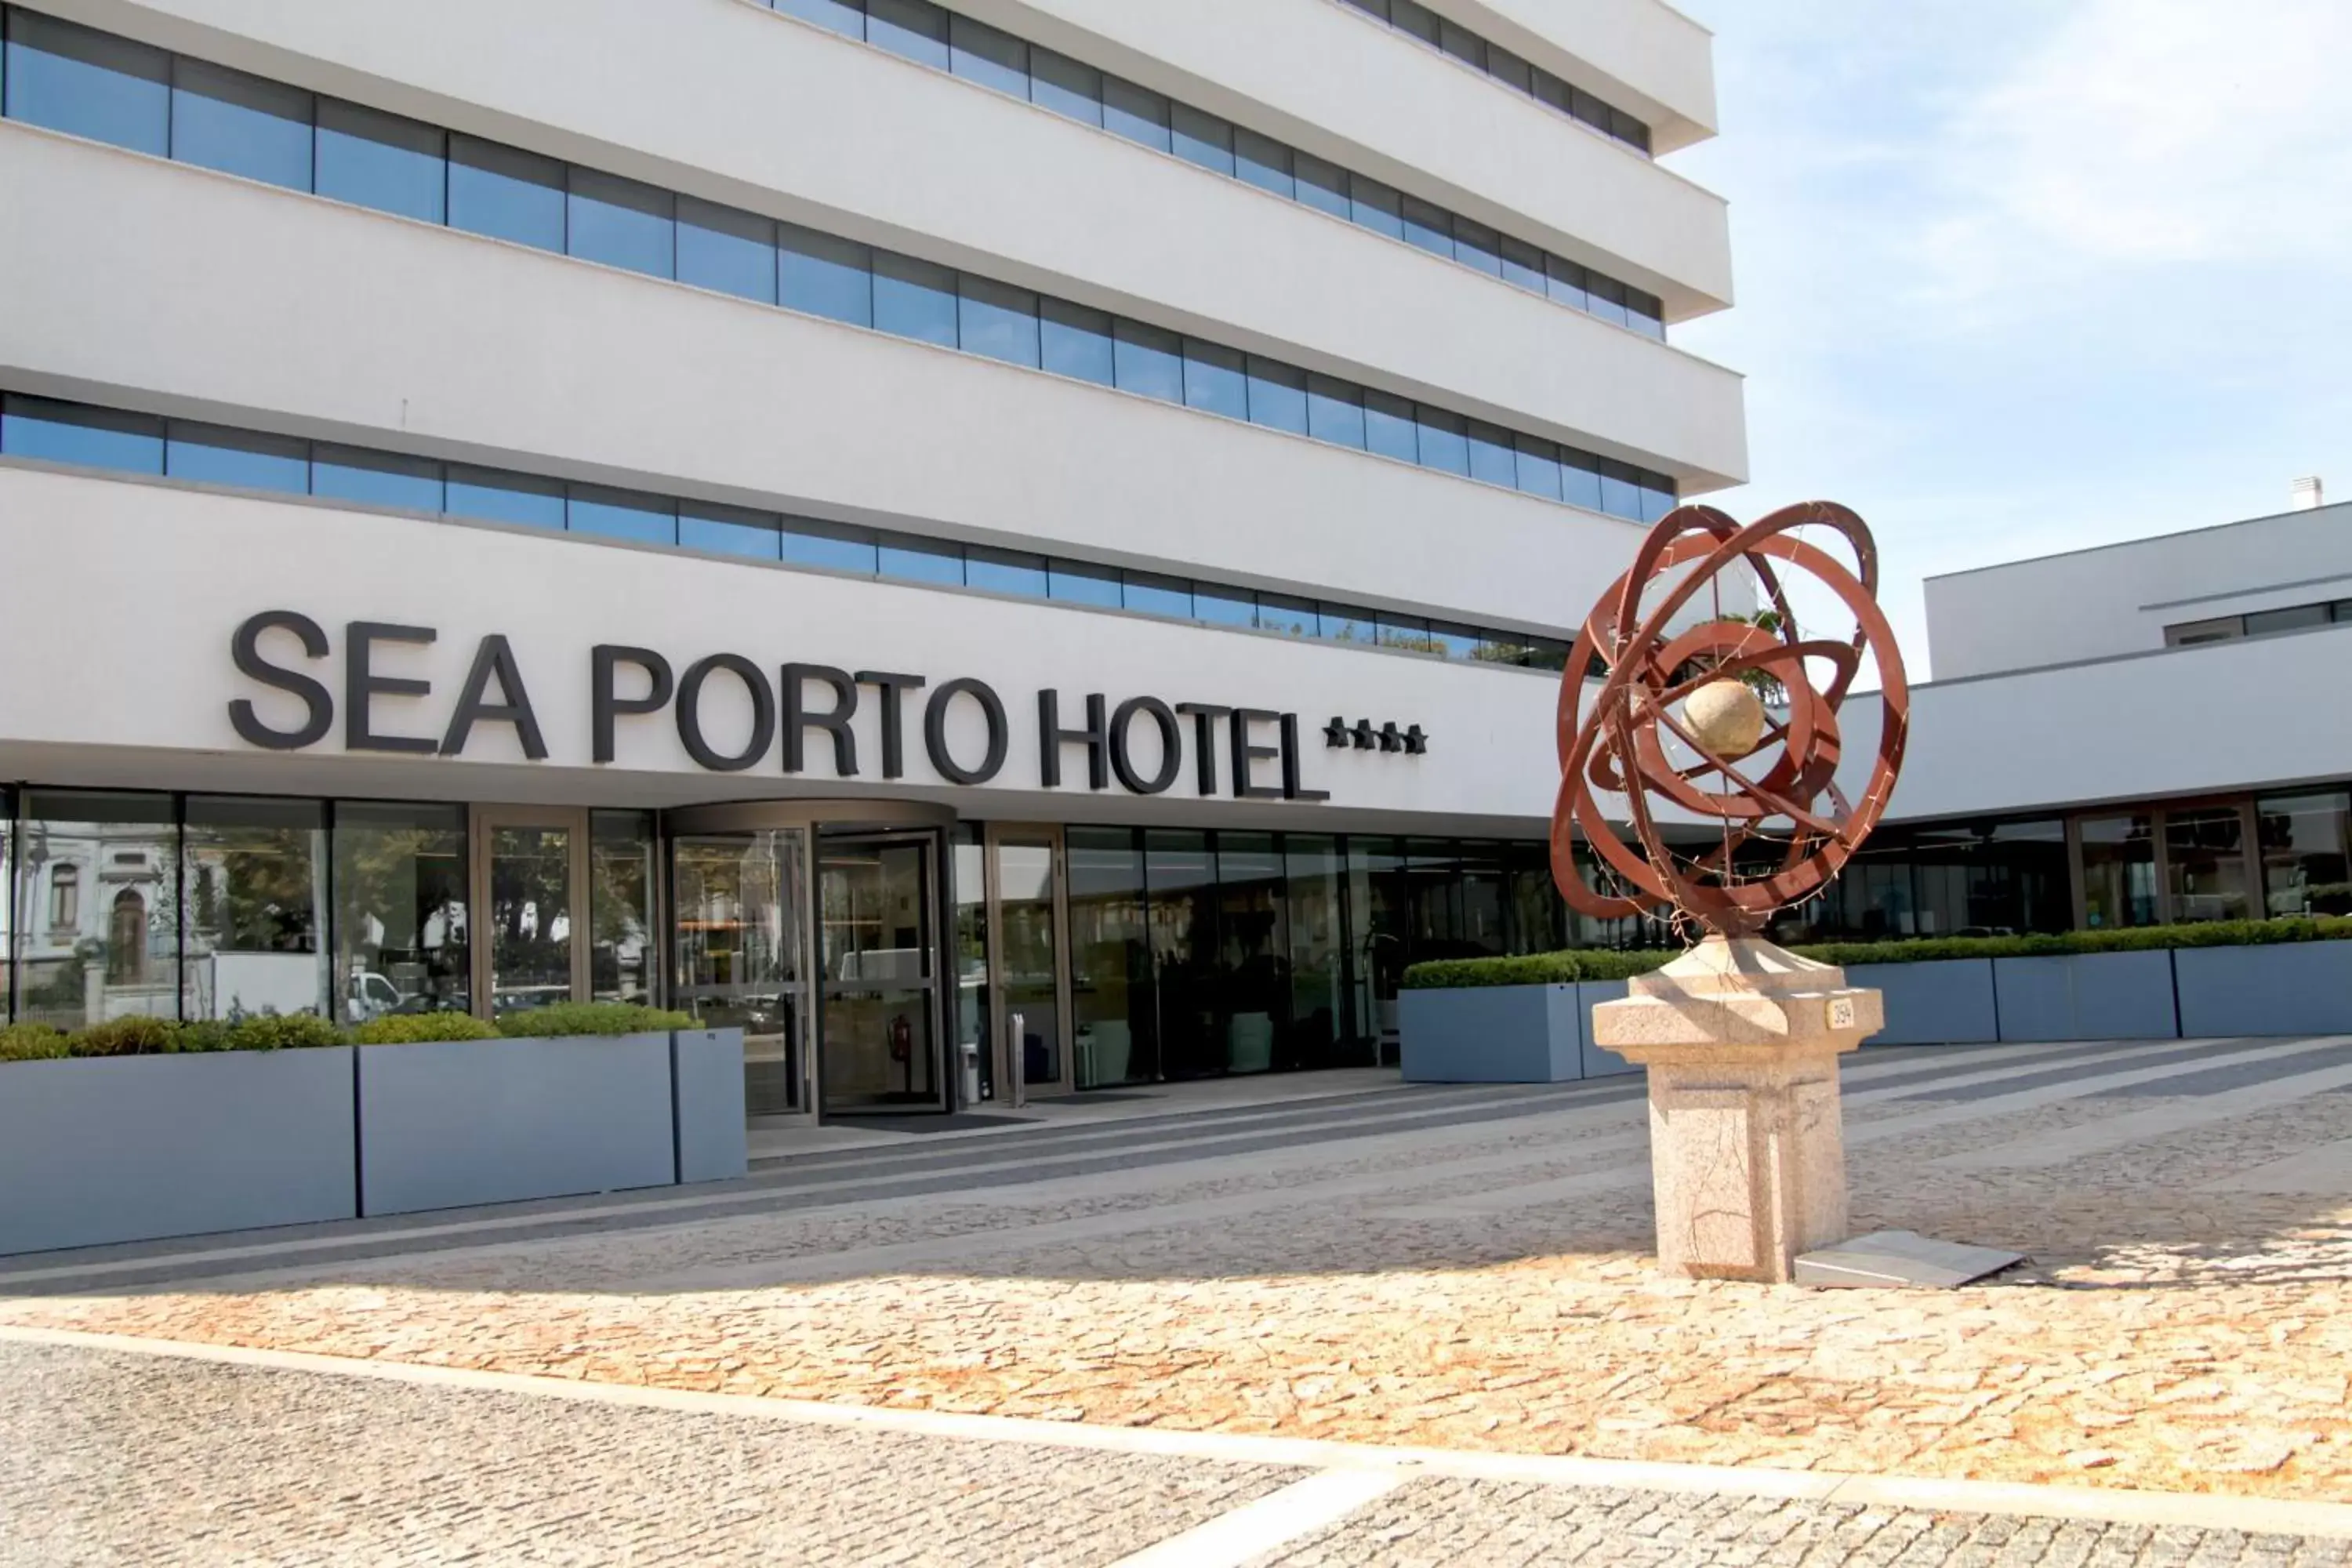 Property Building in Sea Porto Hotel